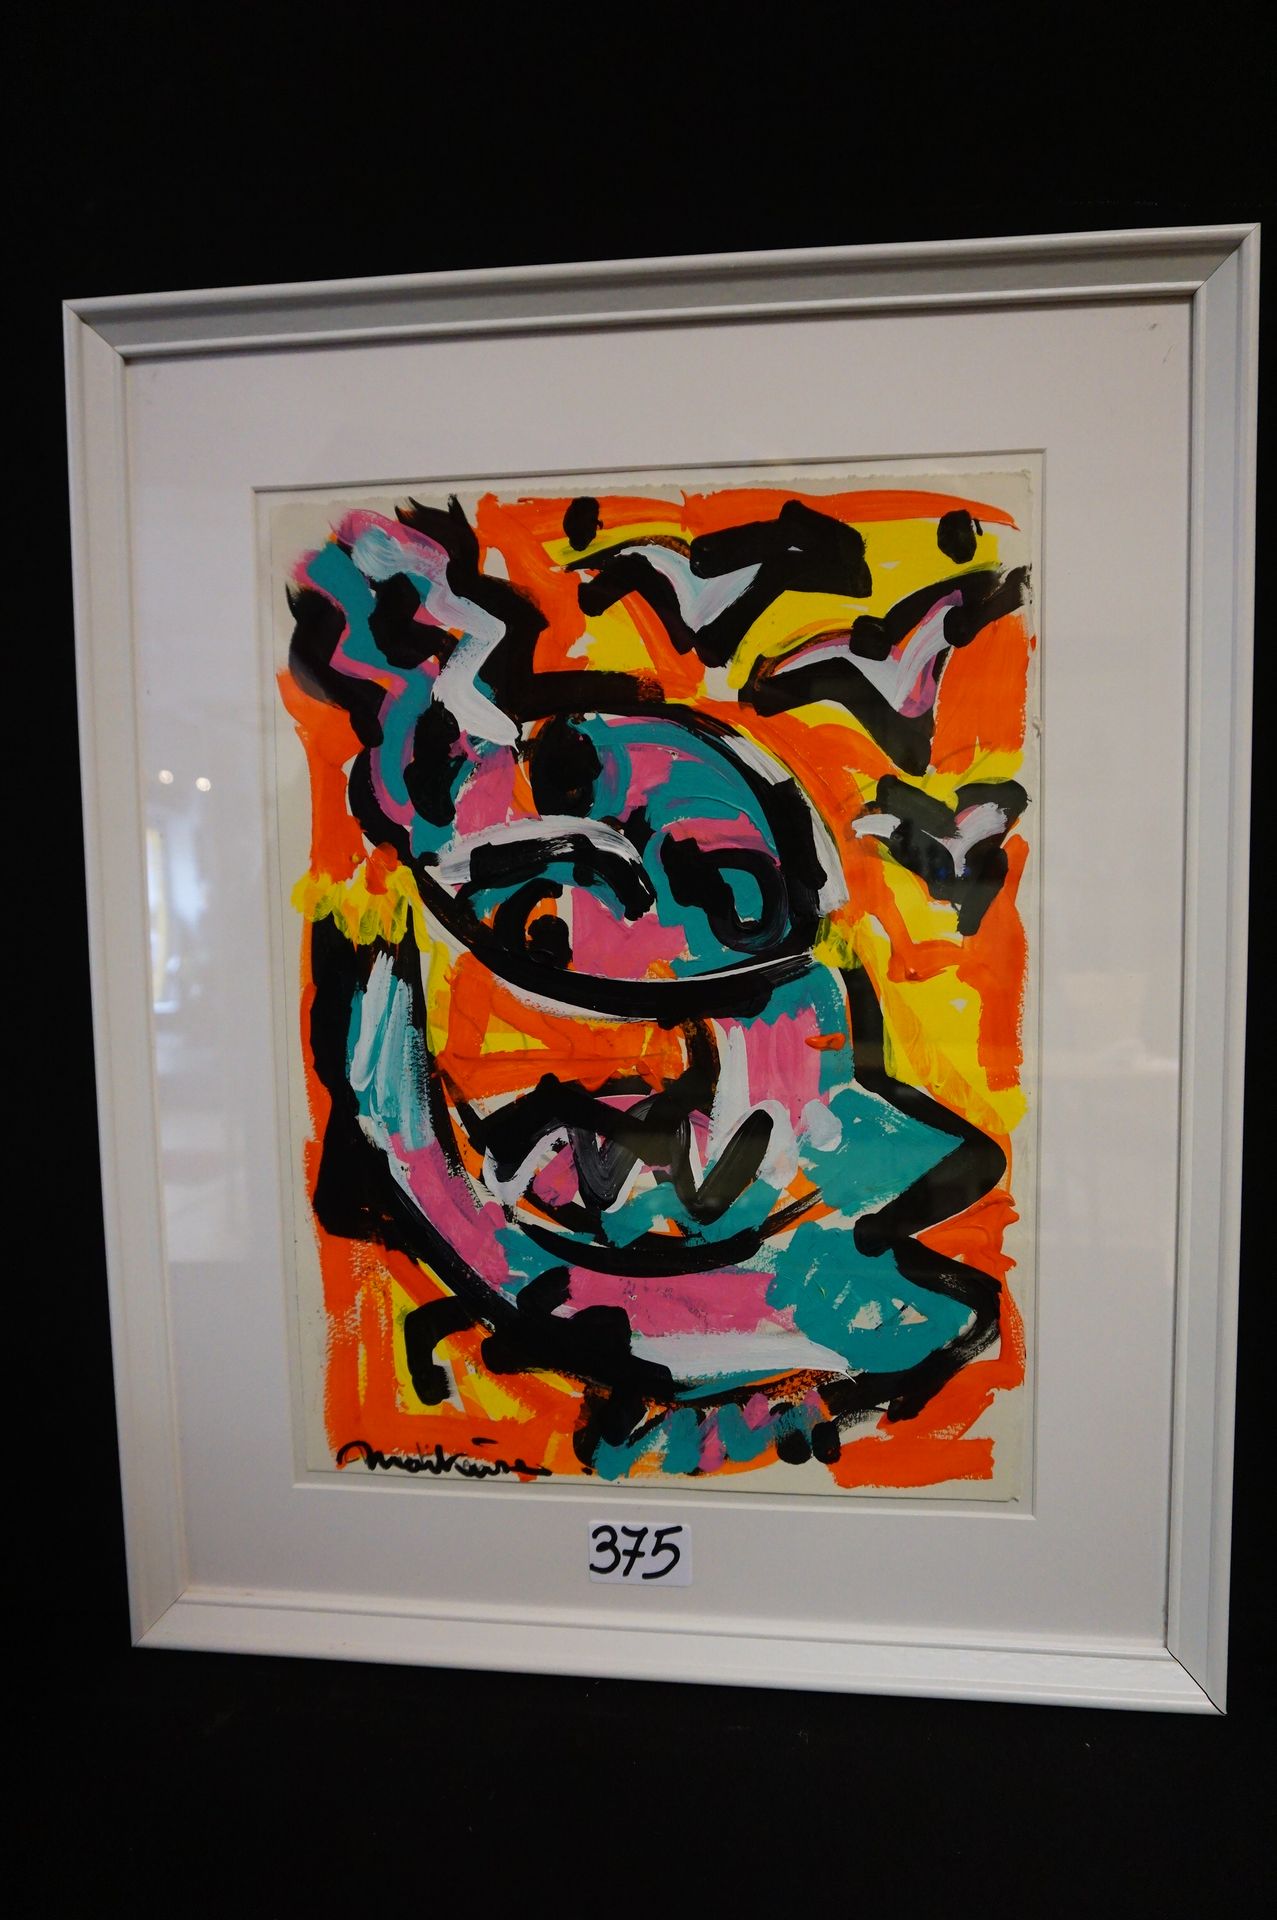 LUC MARTINSEN (1951 - ) "Composición moderna" - Acrílico - Firmado - 37 x 27 cm